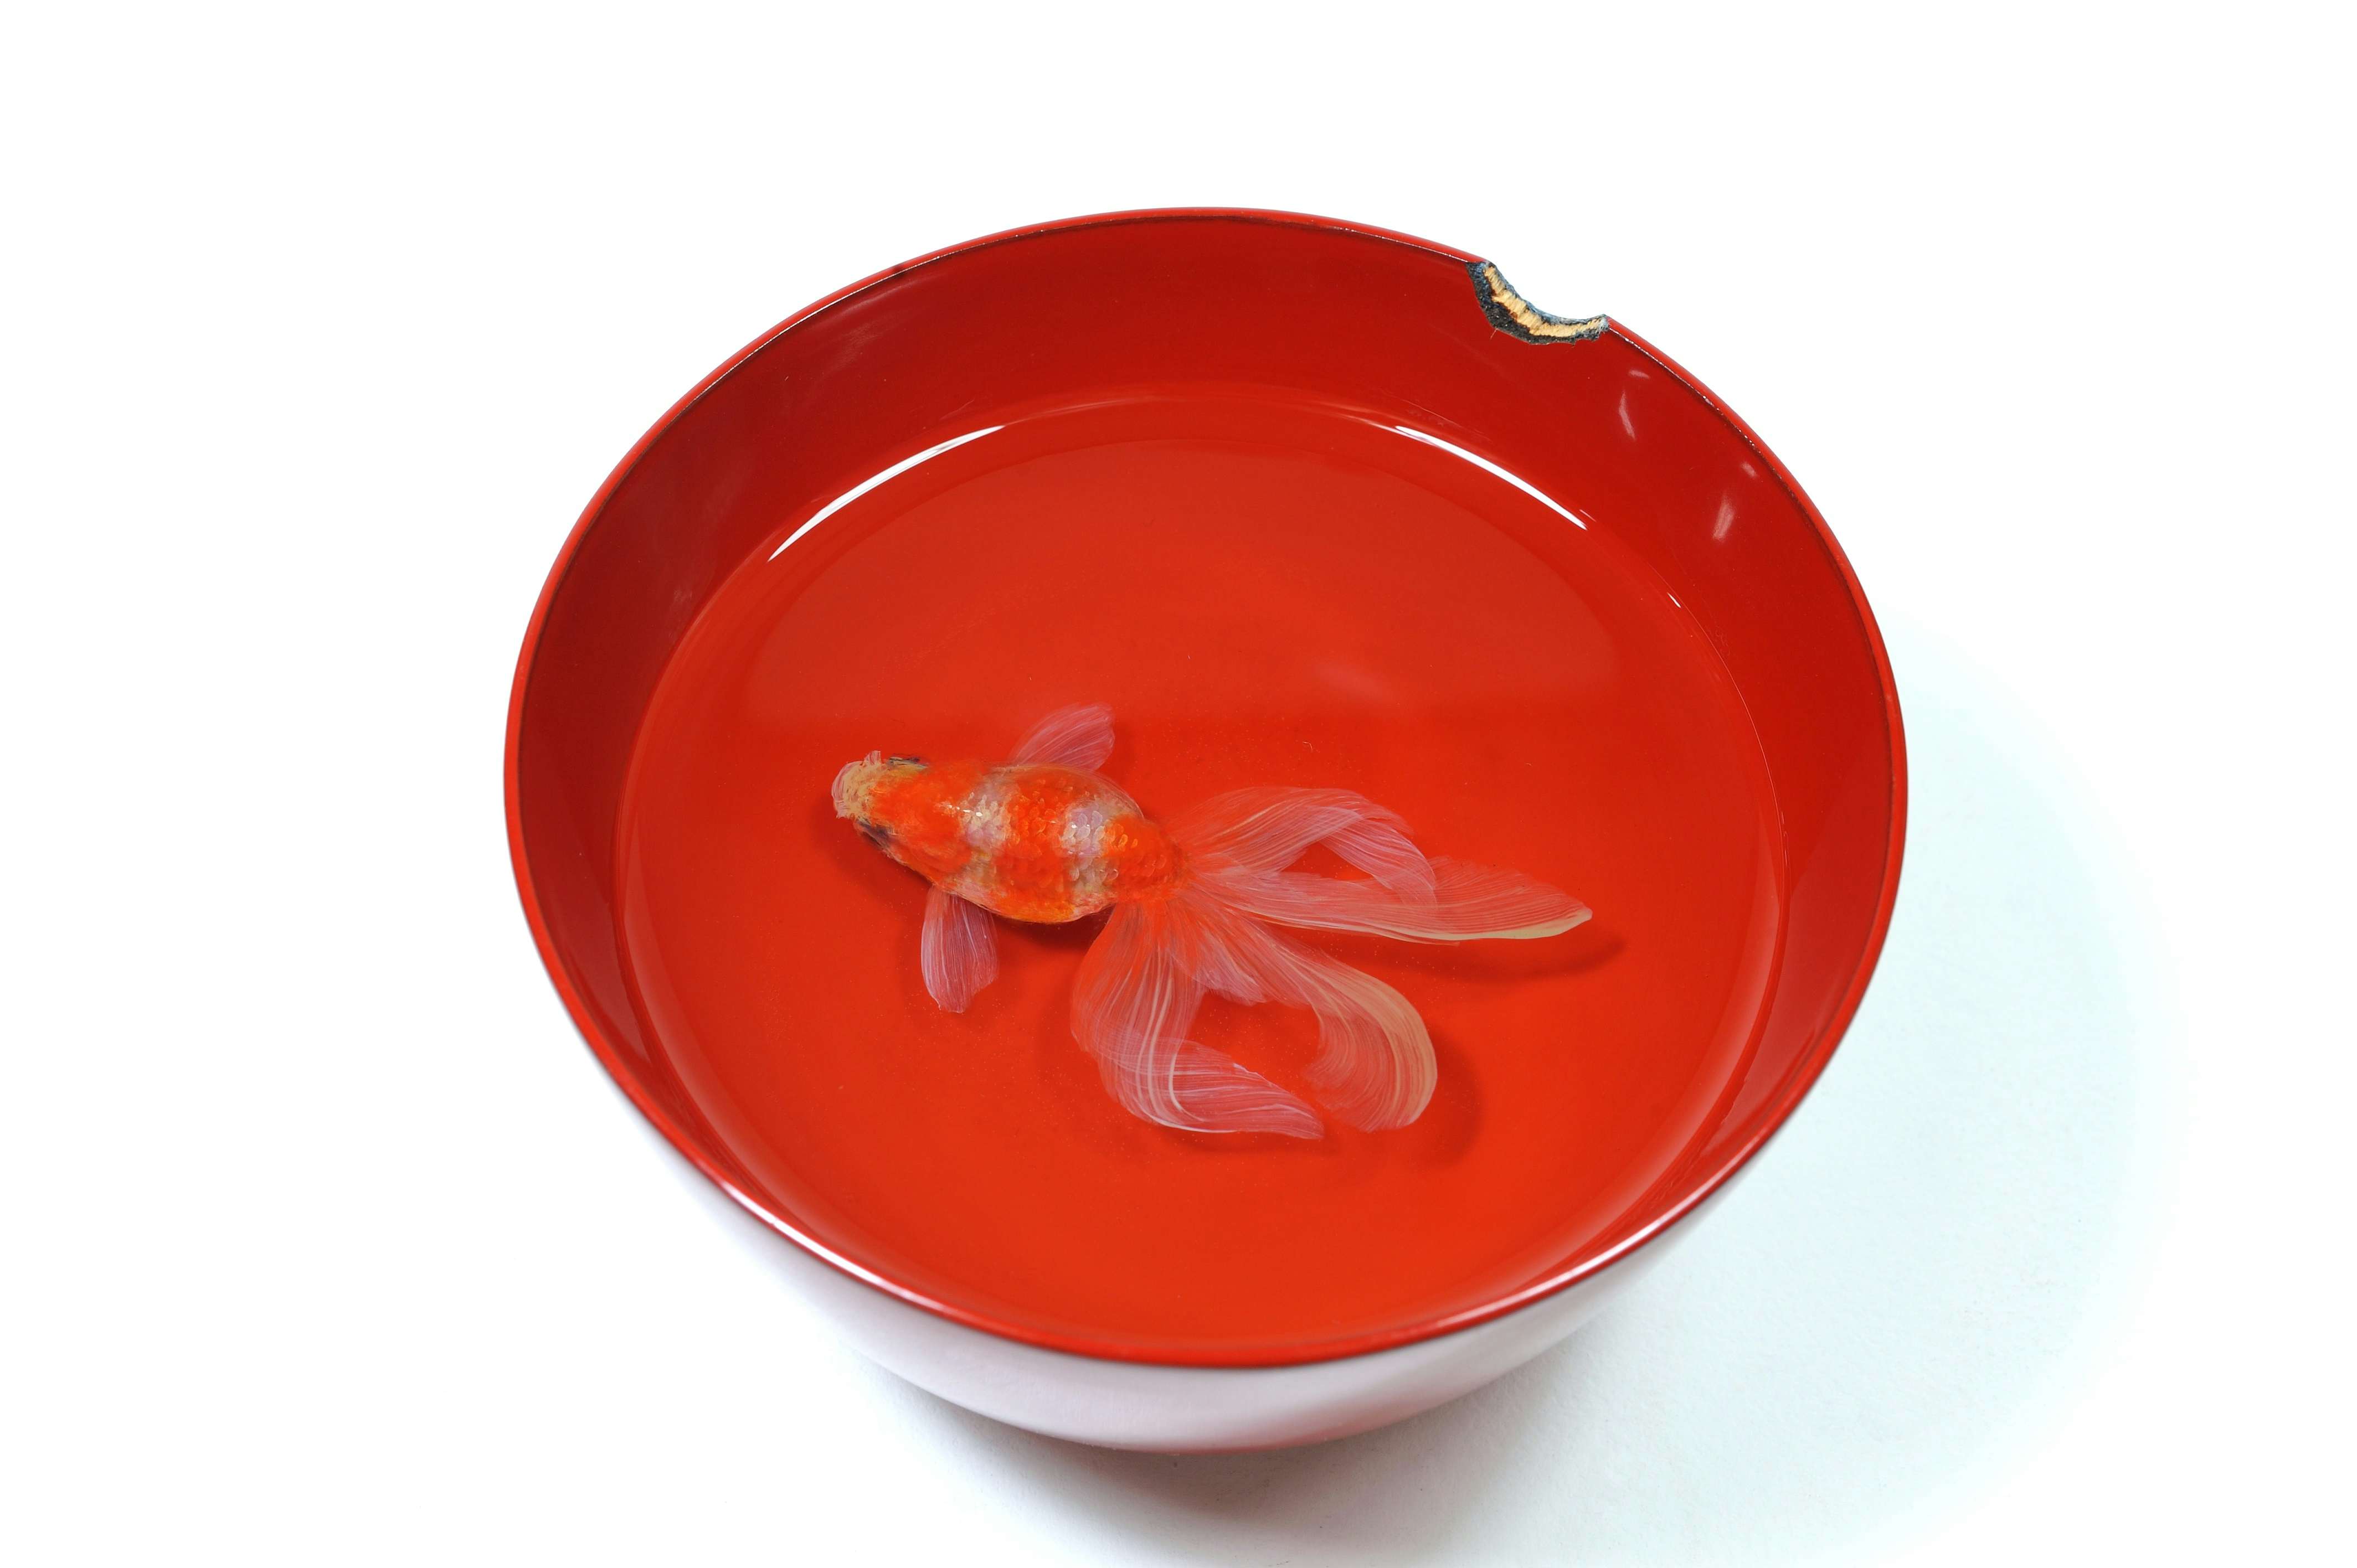 深堀隆介展「金魚鉢、地球鉢。」が上野の森美術館で開催へ。約300点の